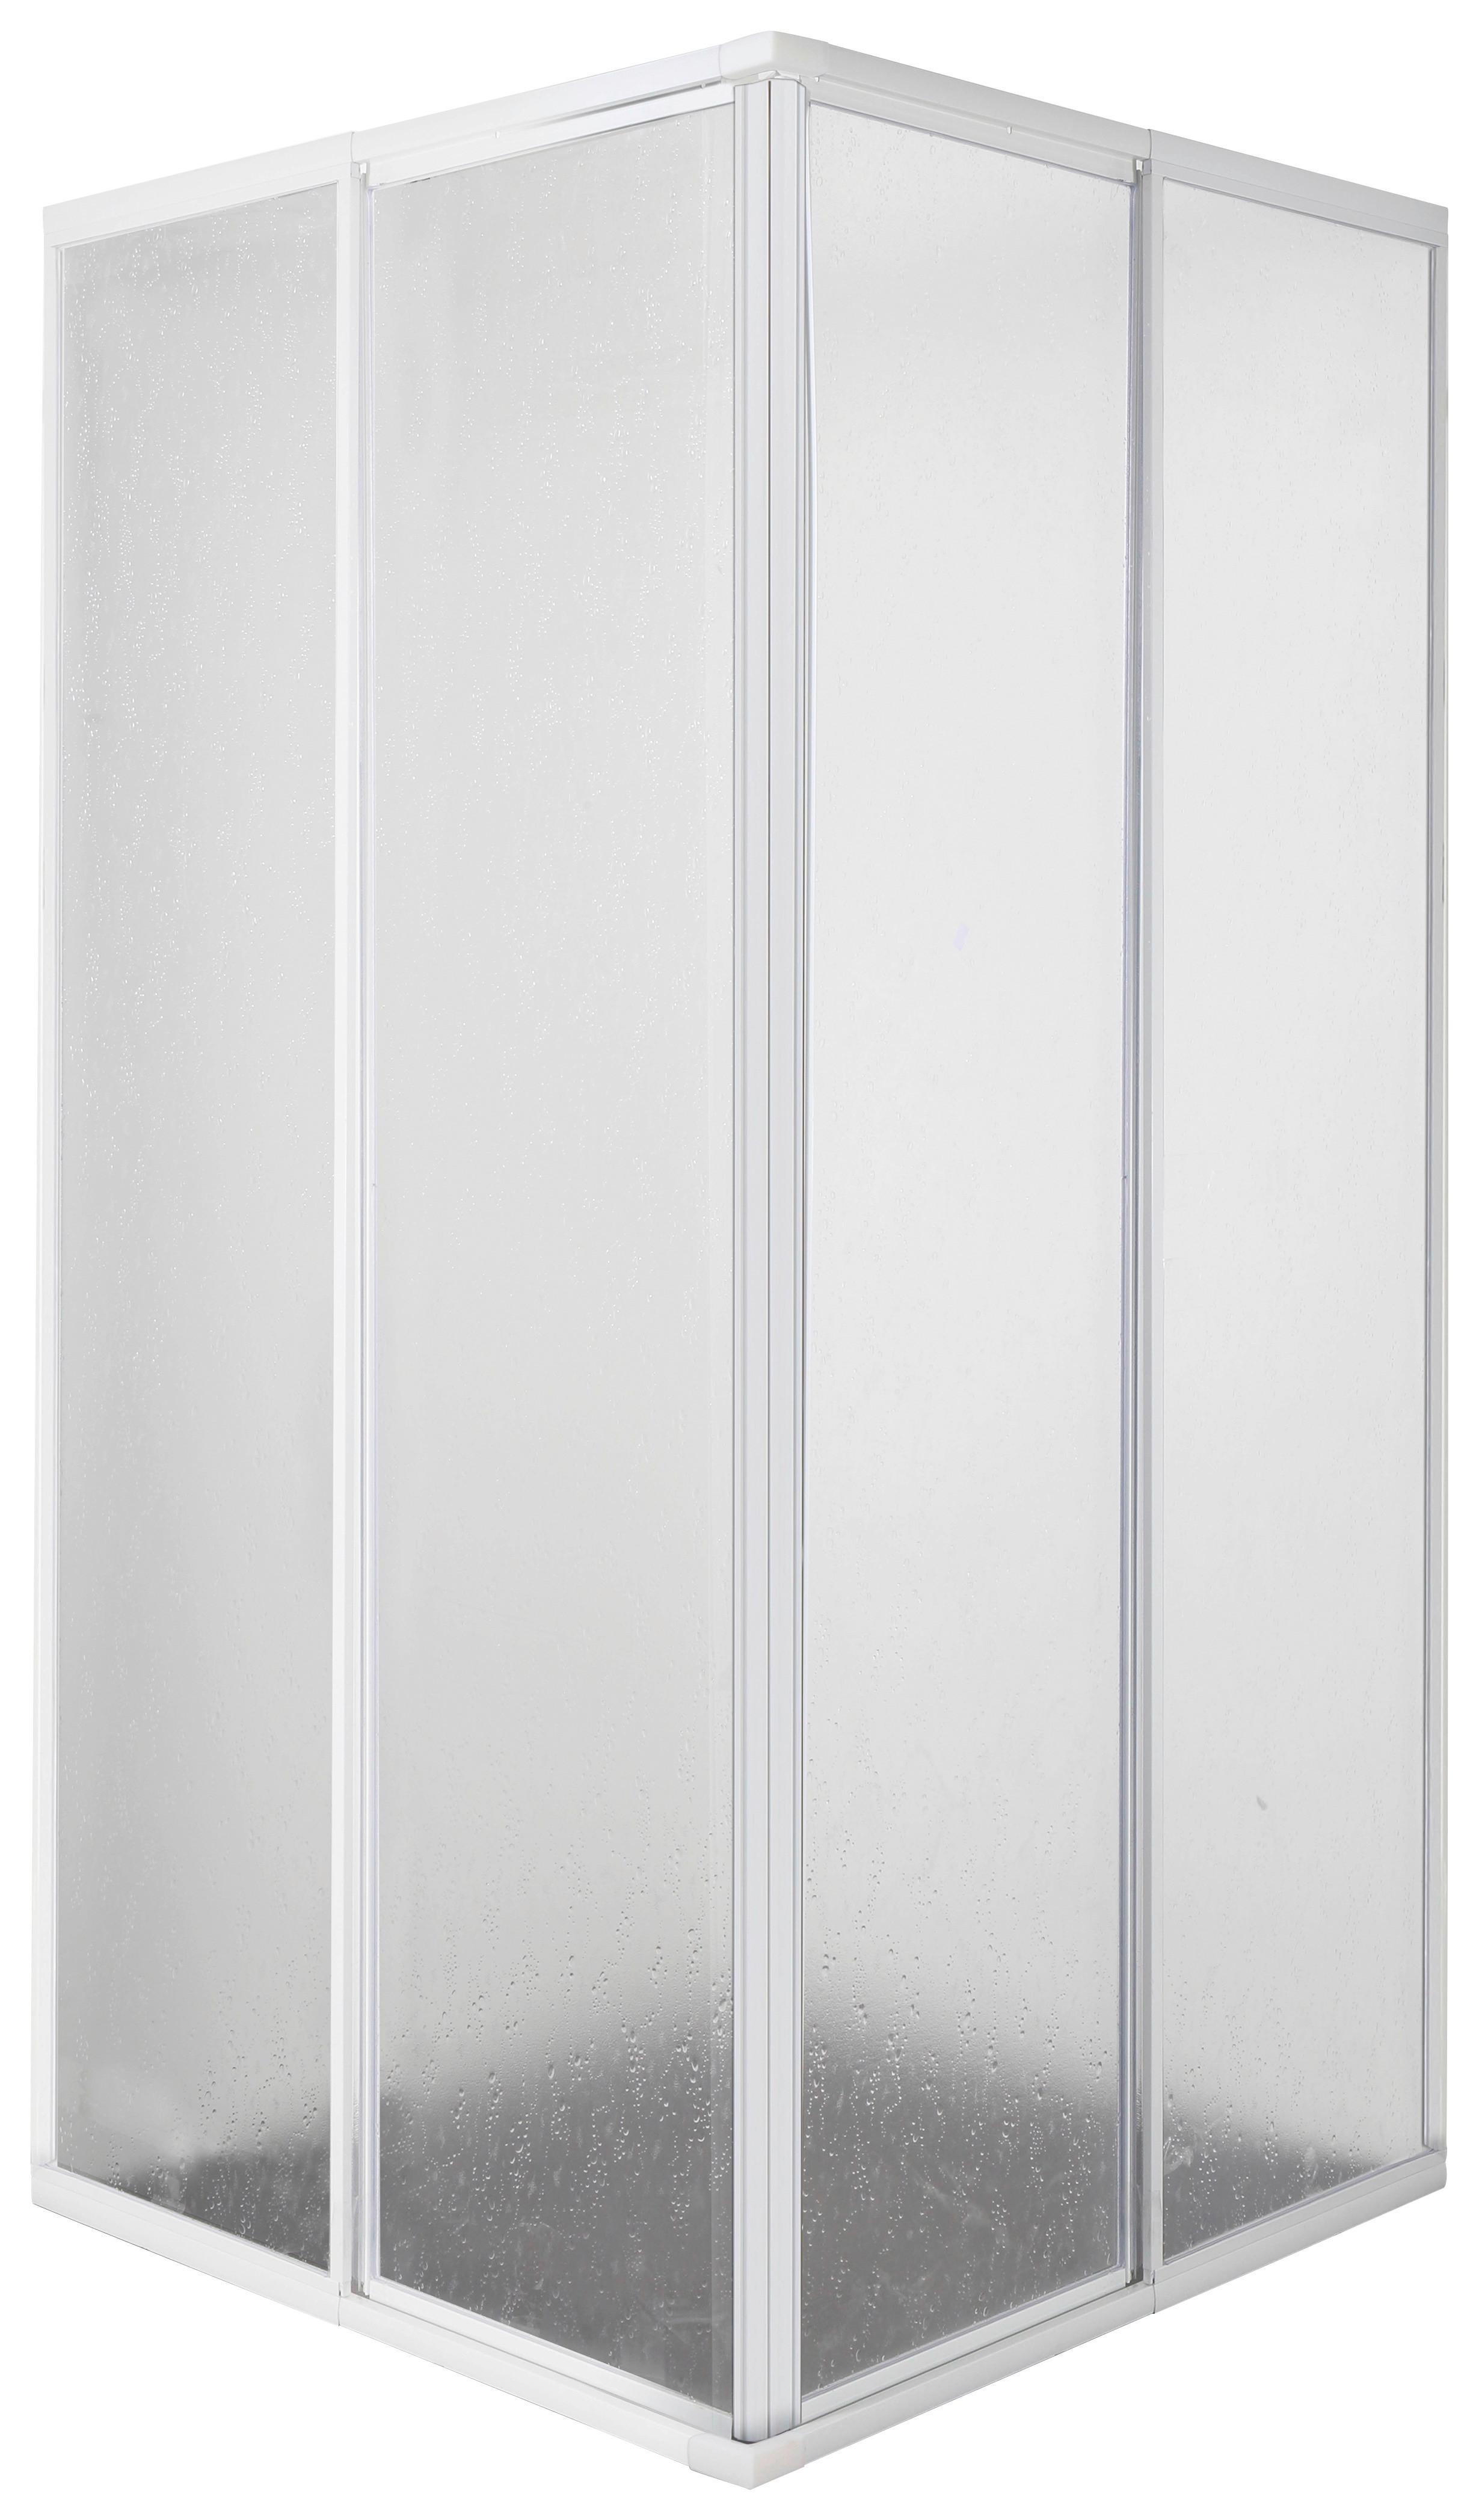 Duschkabine Ac90w Komplett-Set Eckeinstieg - Weiß, MODERN, Kunststoff (88/185/88cm)